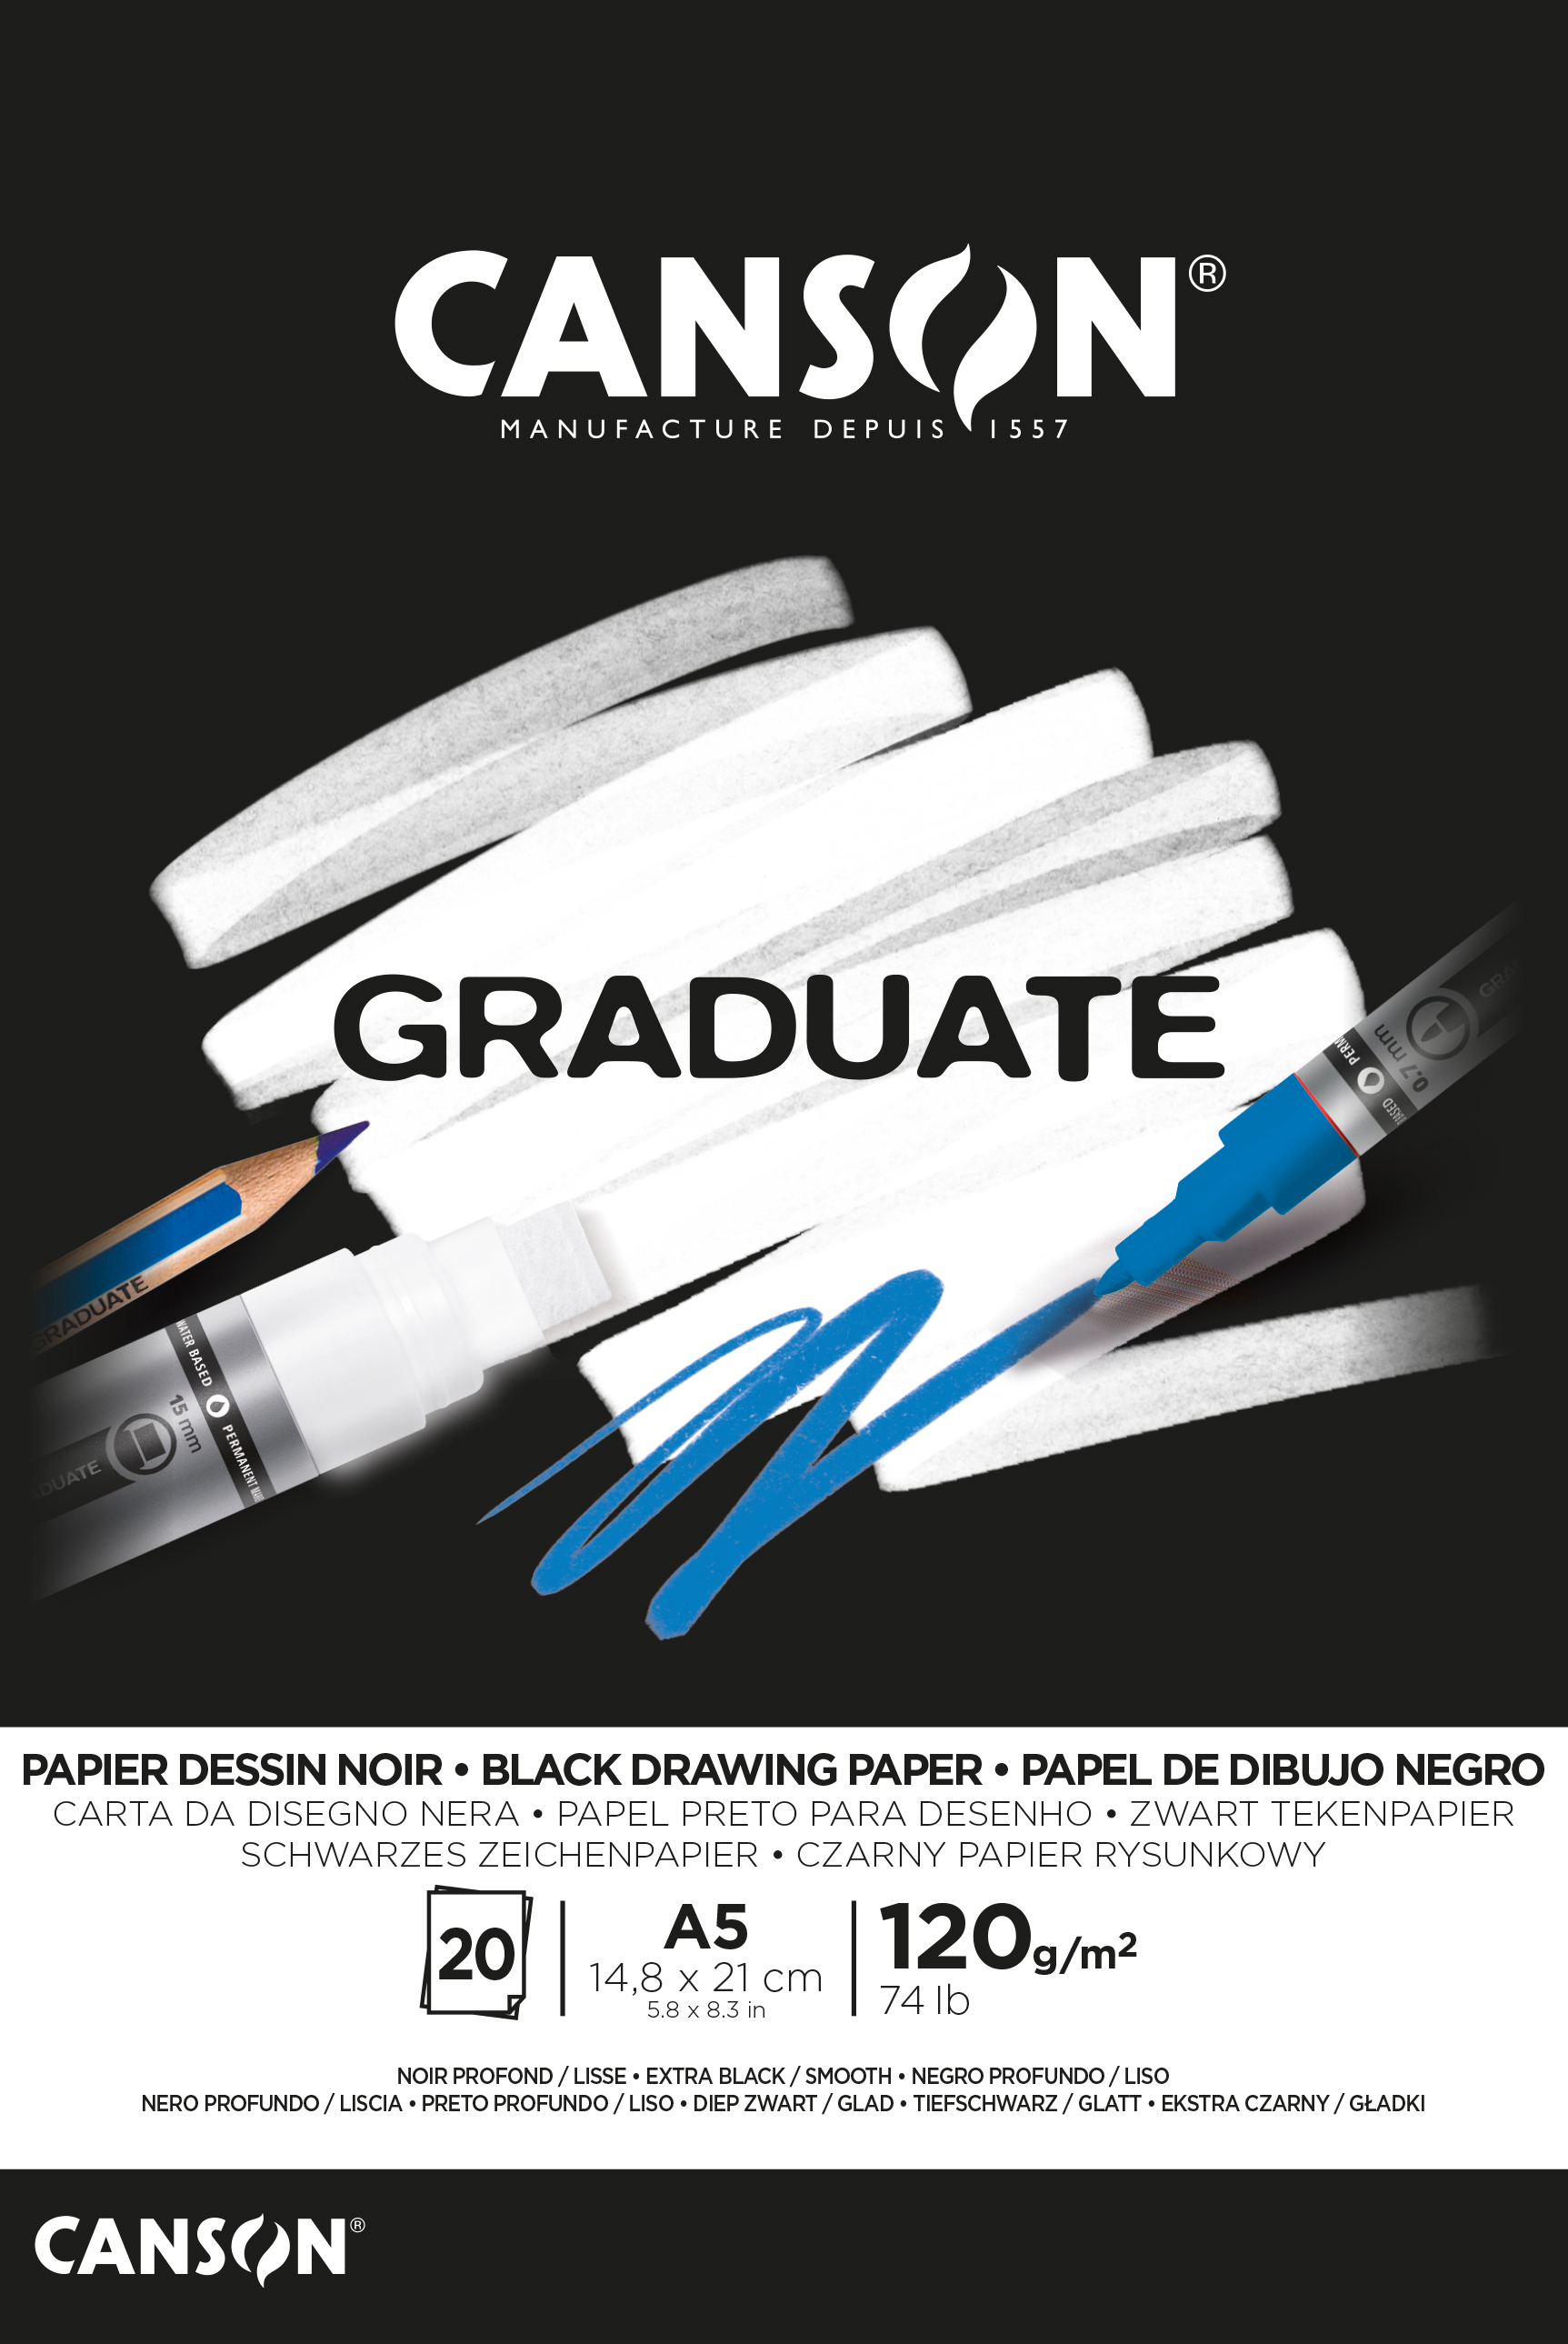 CANSON Graduate papier à dessin A5 400110385 20 flles, noire, 120g 20 flles, noire, 120g